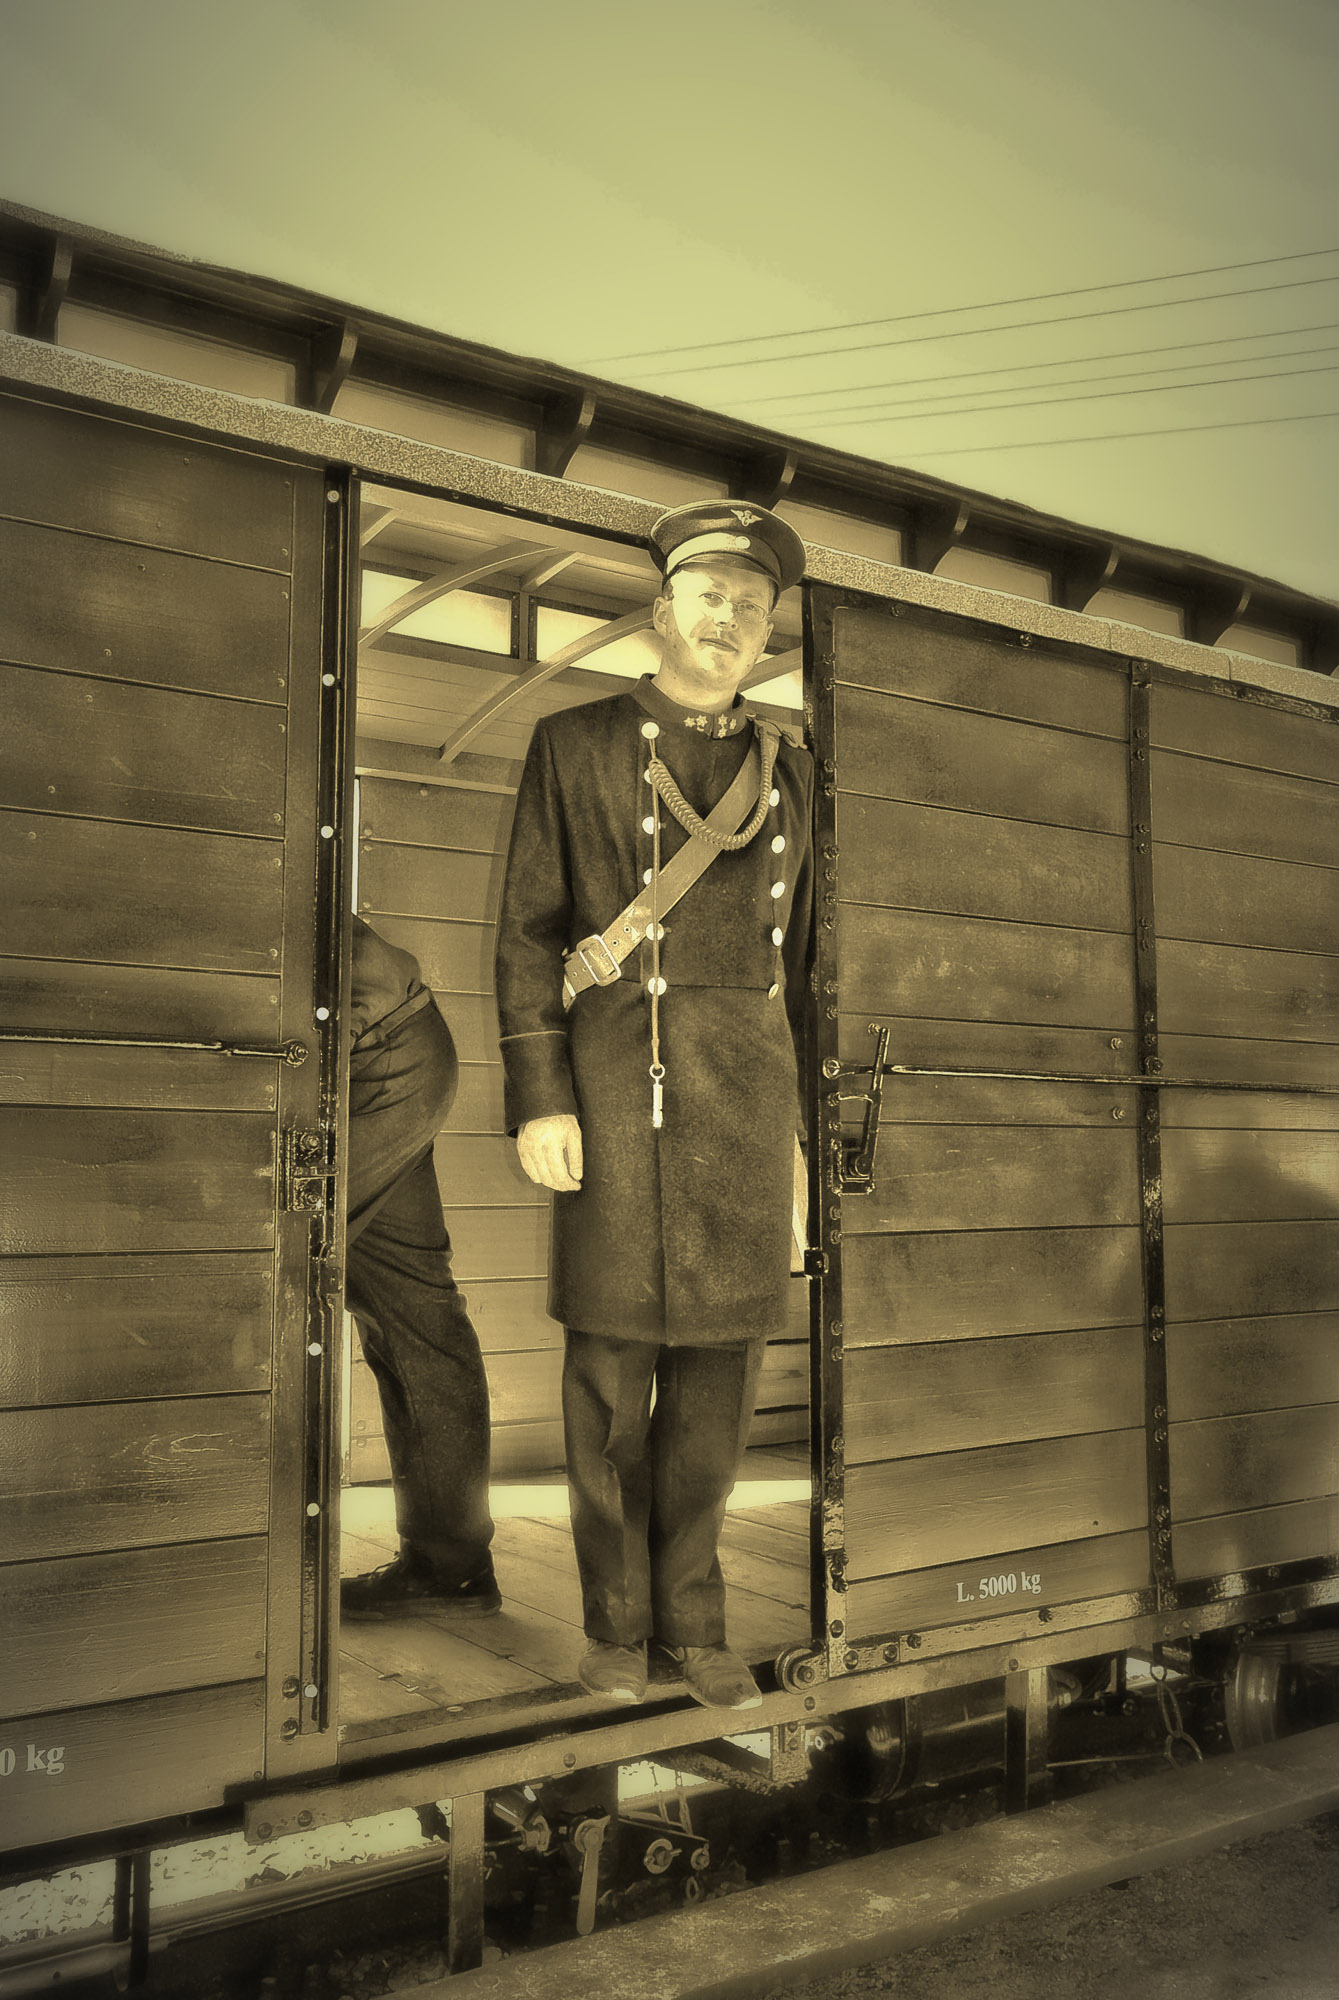 Sah der junge Zugbegleiter um 1900 so aus? Heutzutage ist es, dank Bildbearbeitungsprogrammen mglich sich in die gute alte Zeit versetzen zu lassen, ohne irgend eine Postkarte oder ein analoges Foto aus dieser Epoche zu haben. 